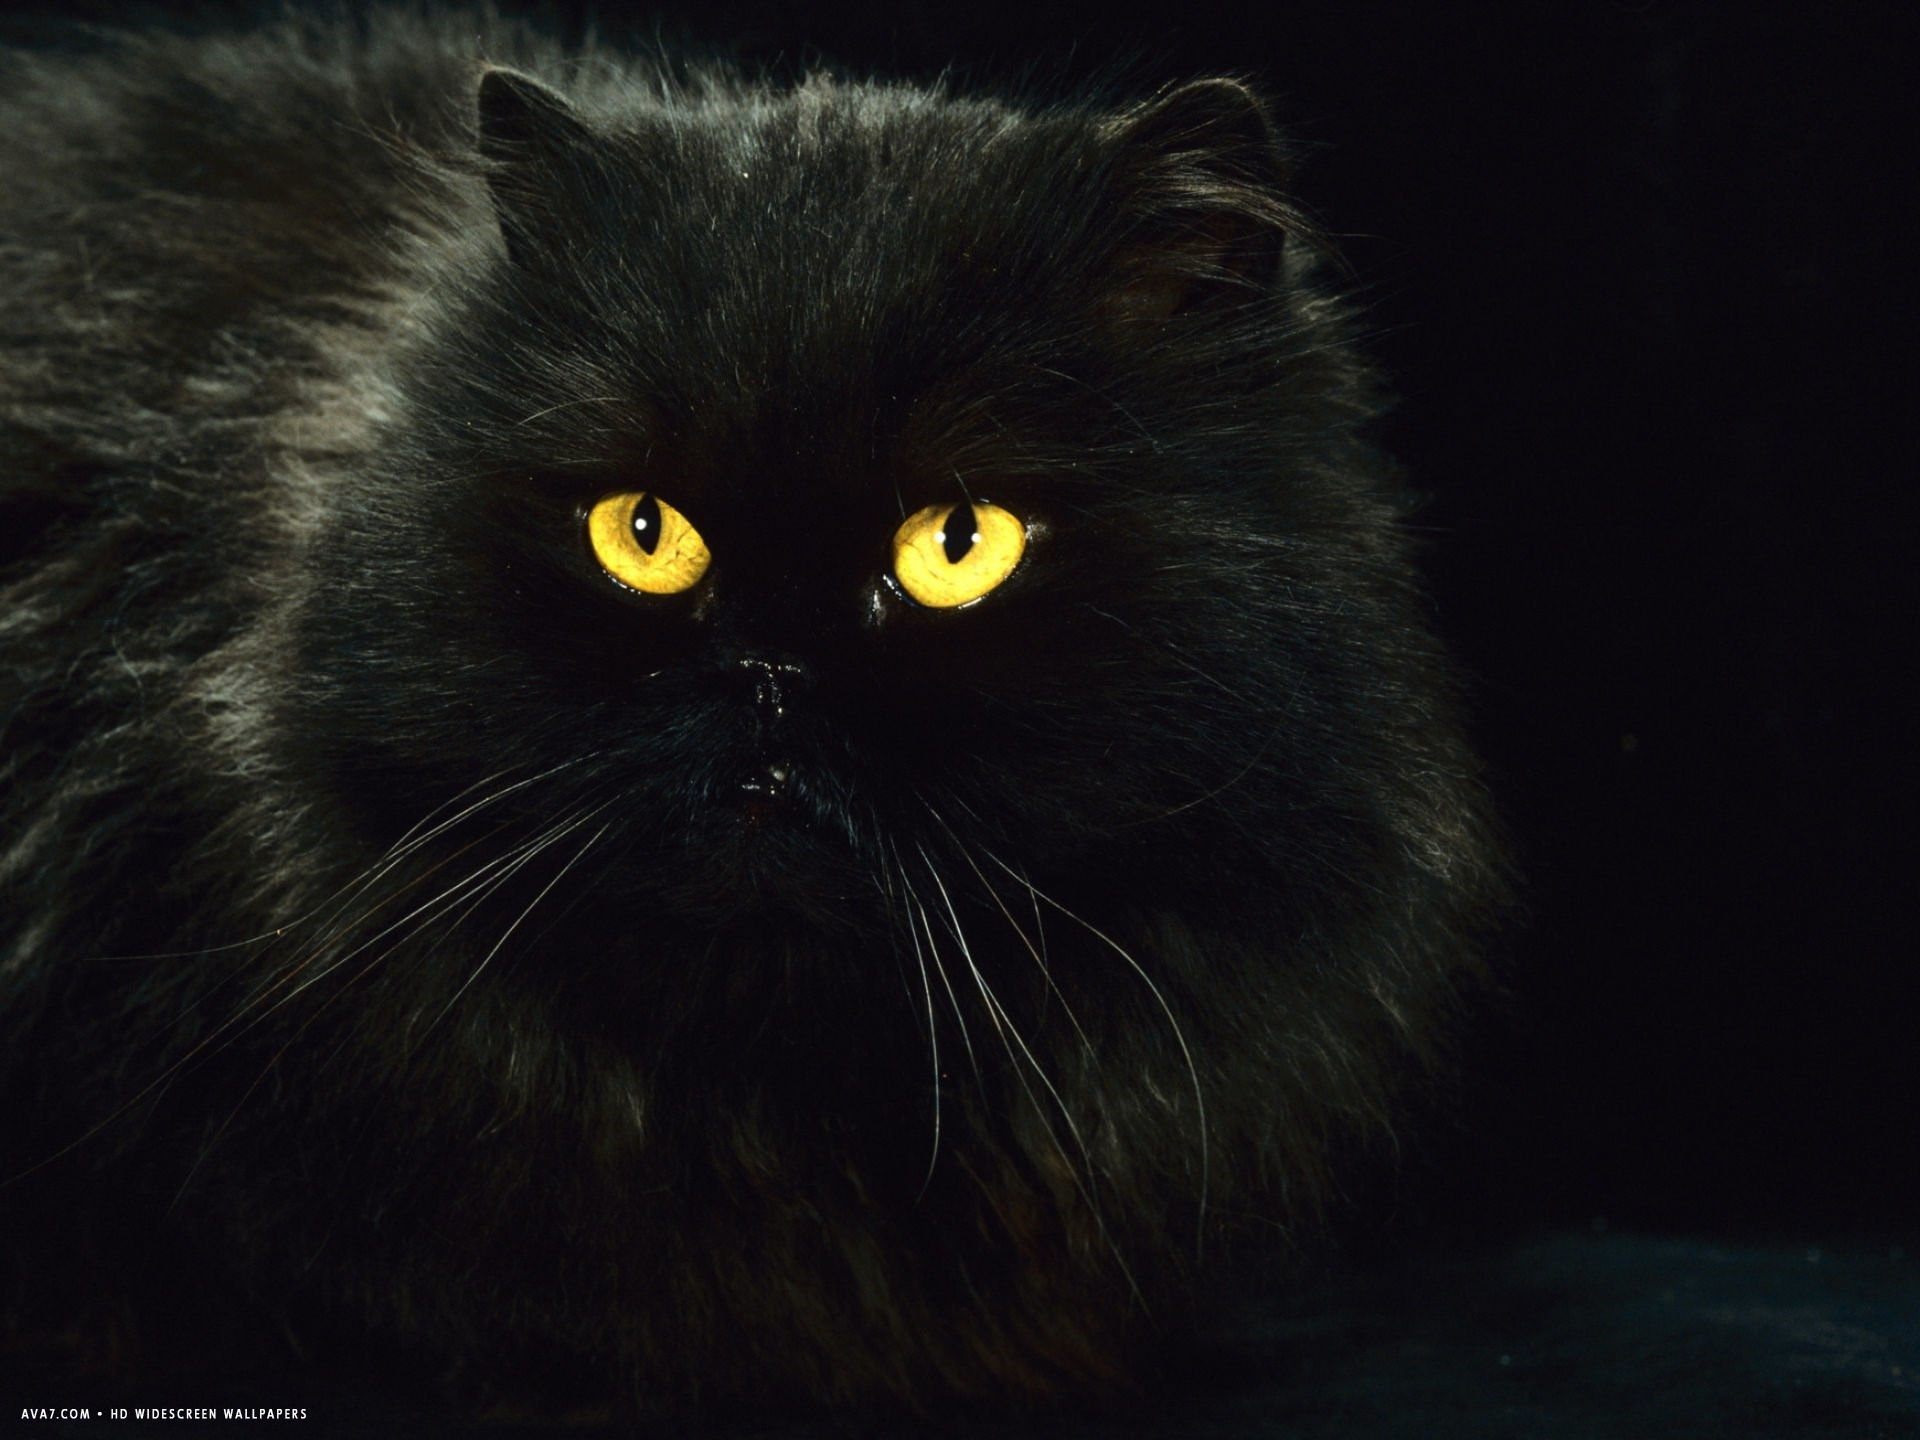 Черная персидская кошка фото